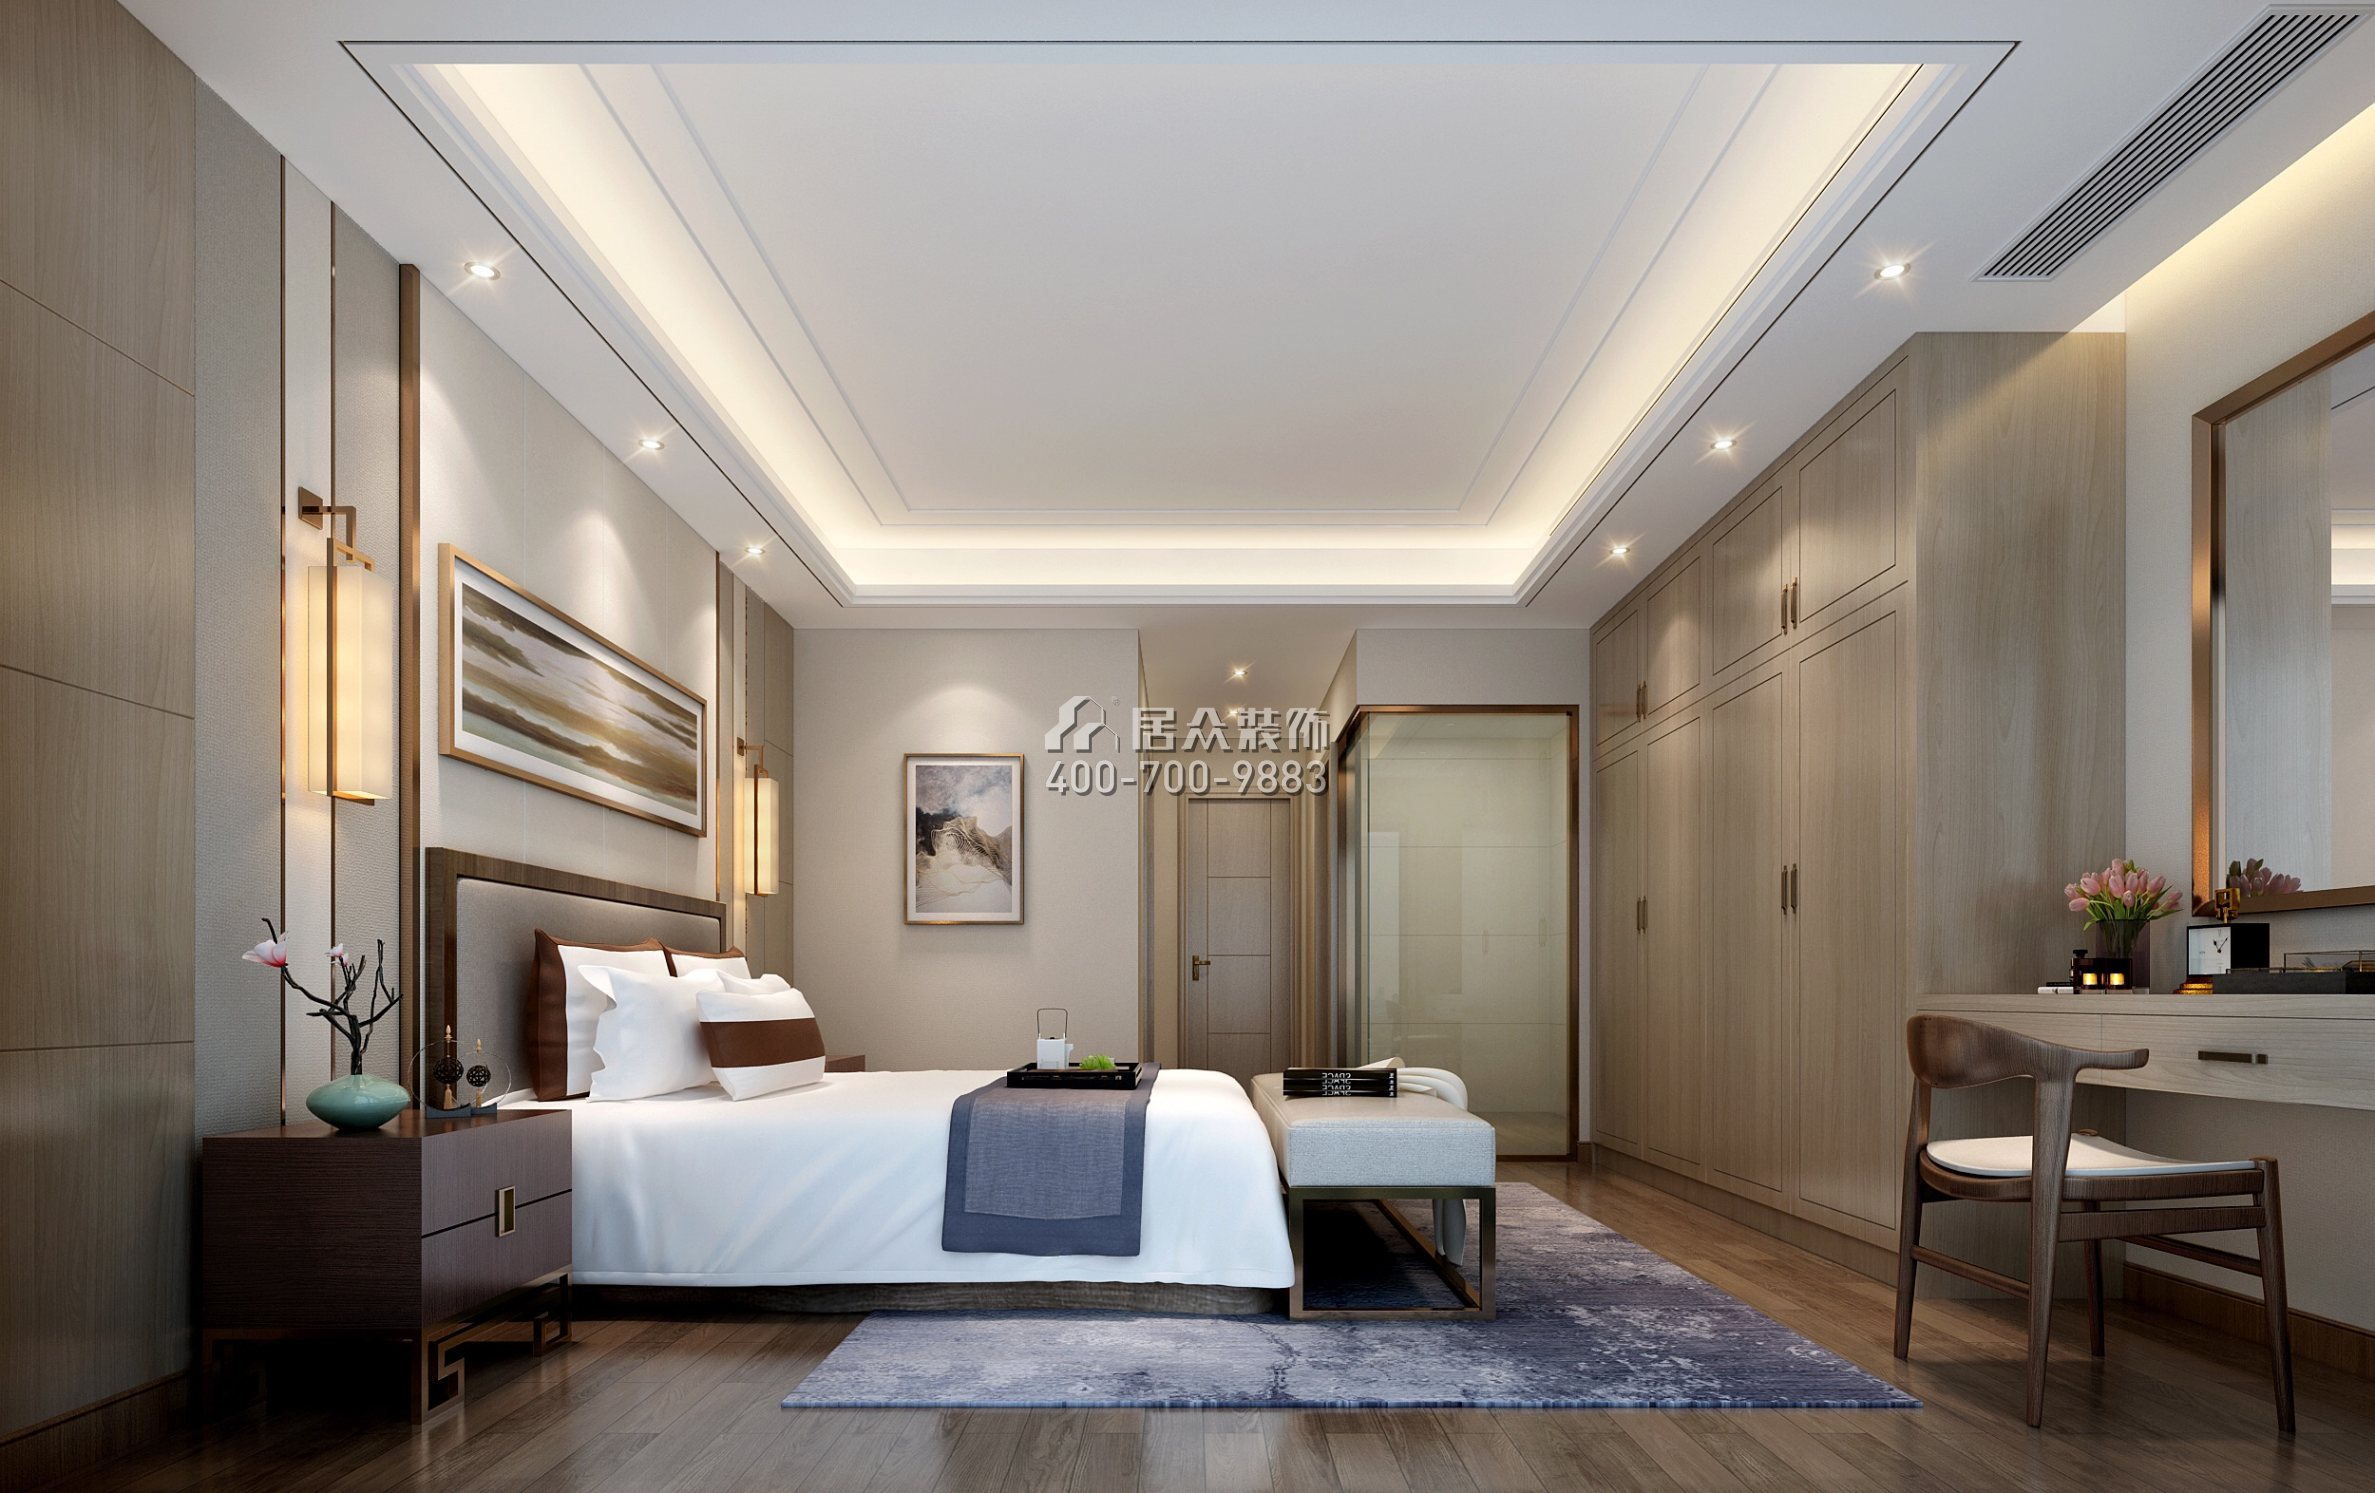 海逸豪庭尚都二区266平方米中式风格别墅户型卧室装修效果图